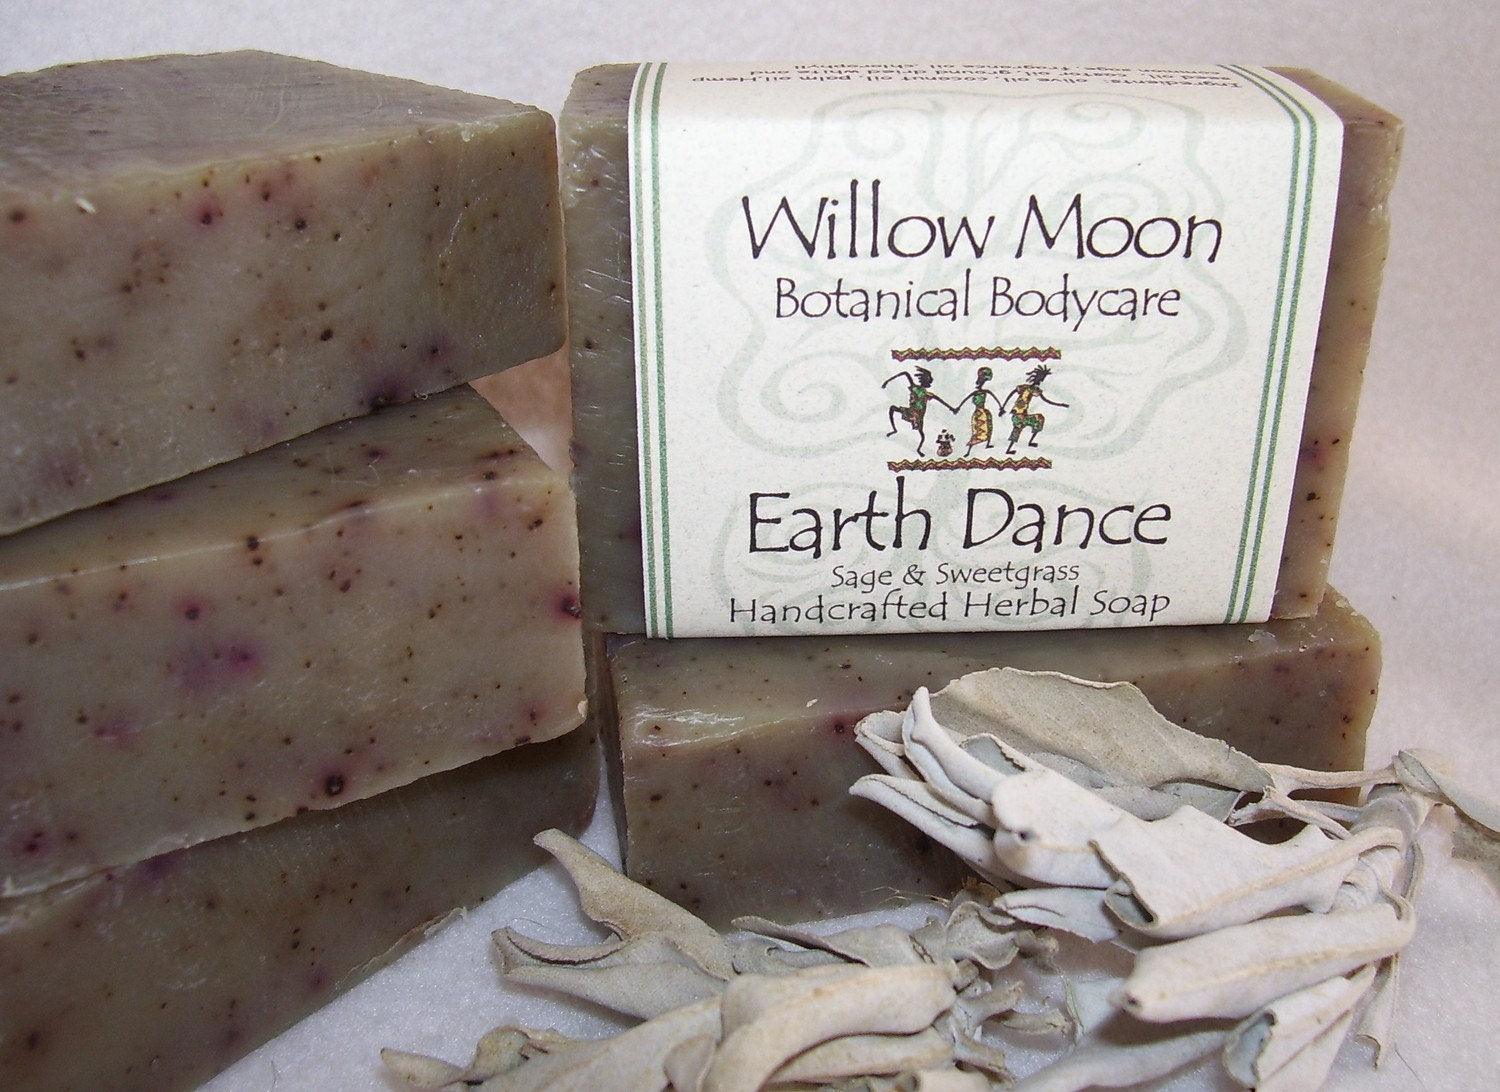 Sage Herbal Soap